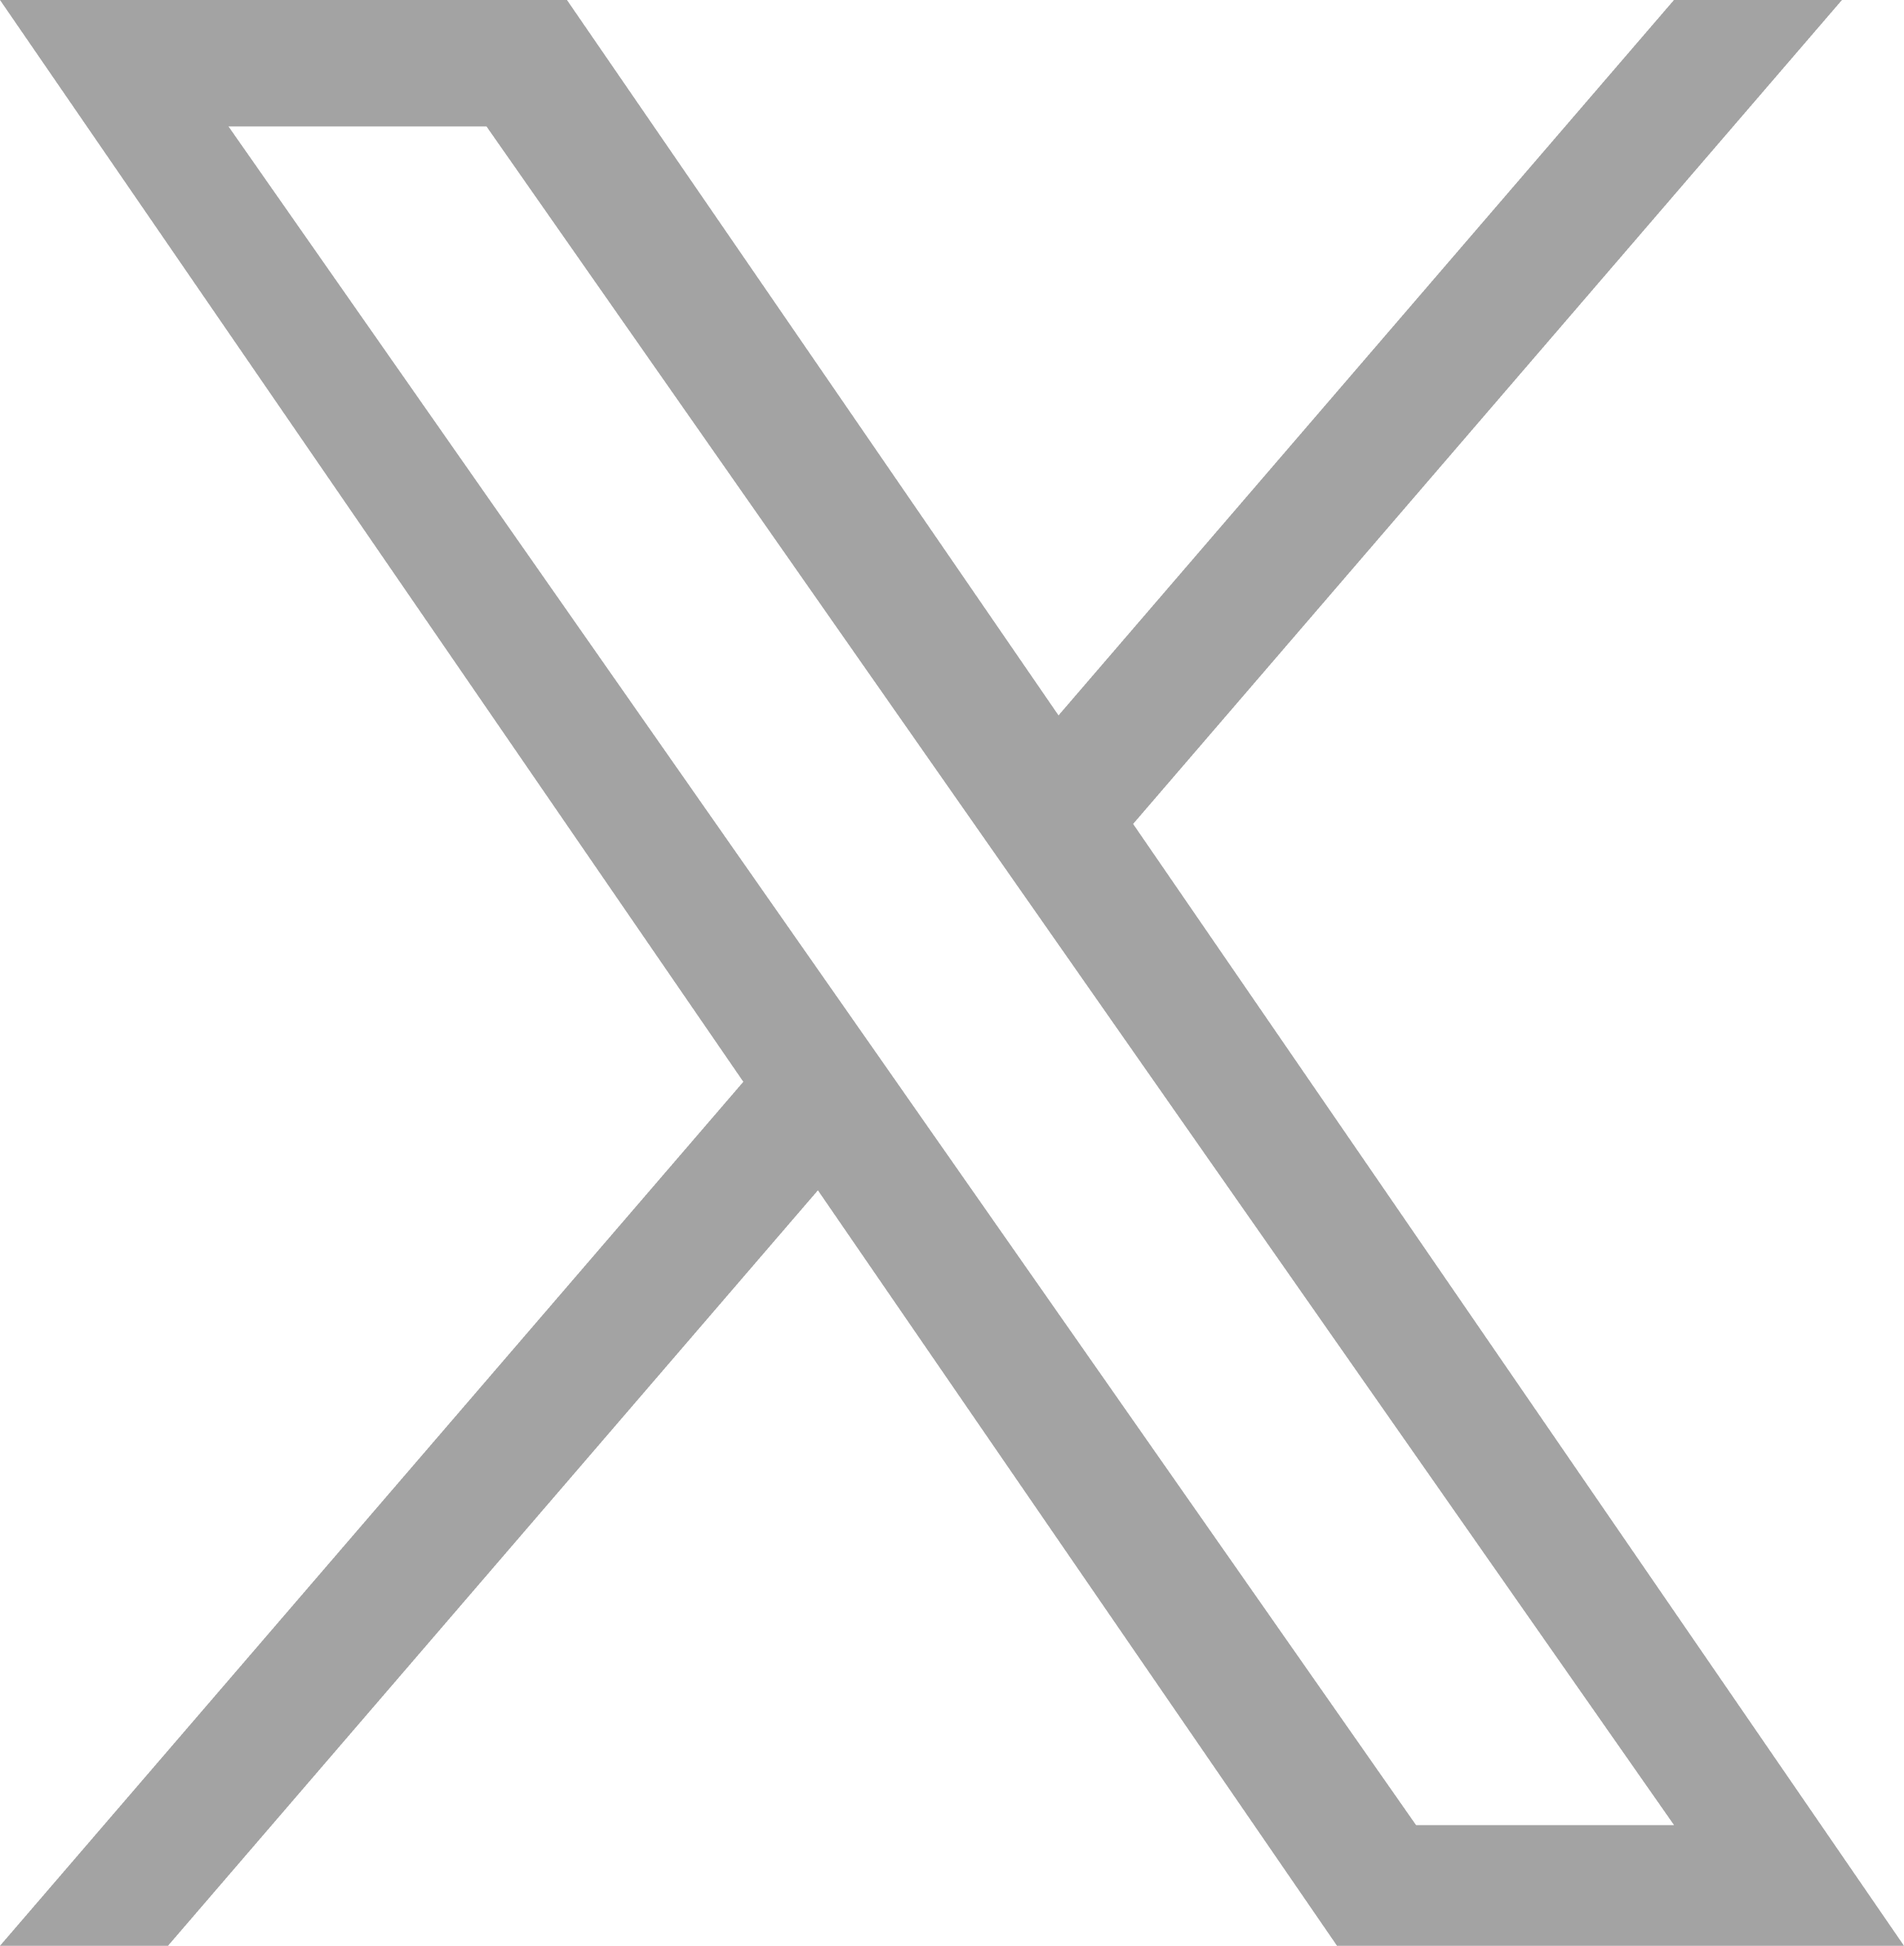 X logo in gray